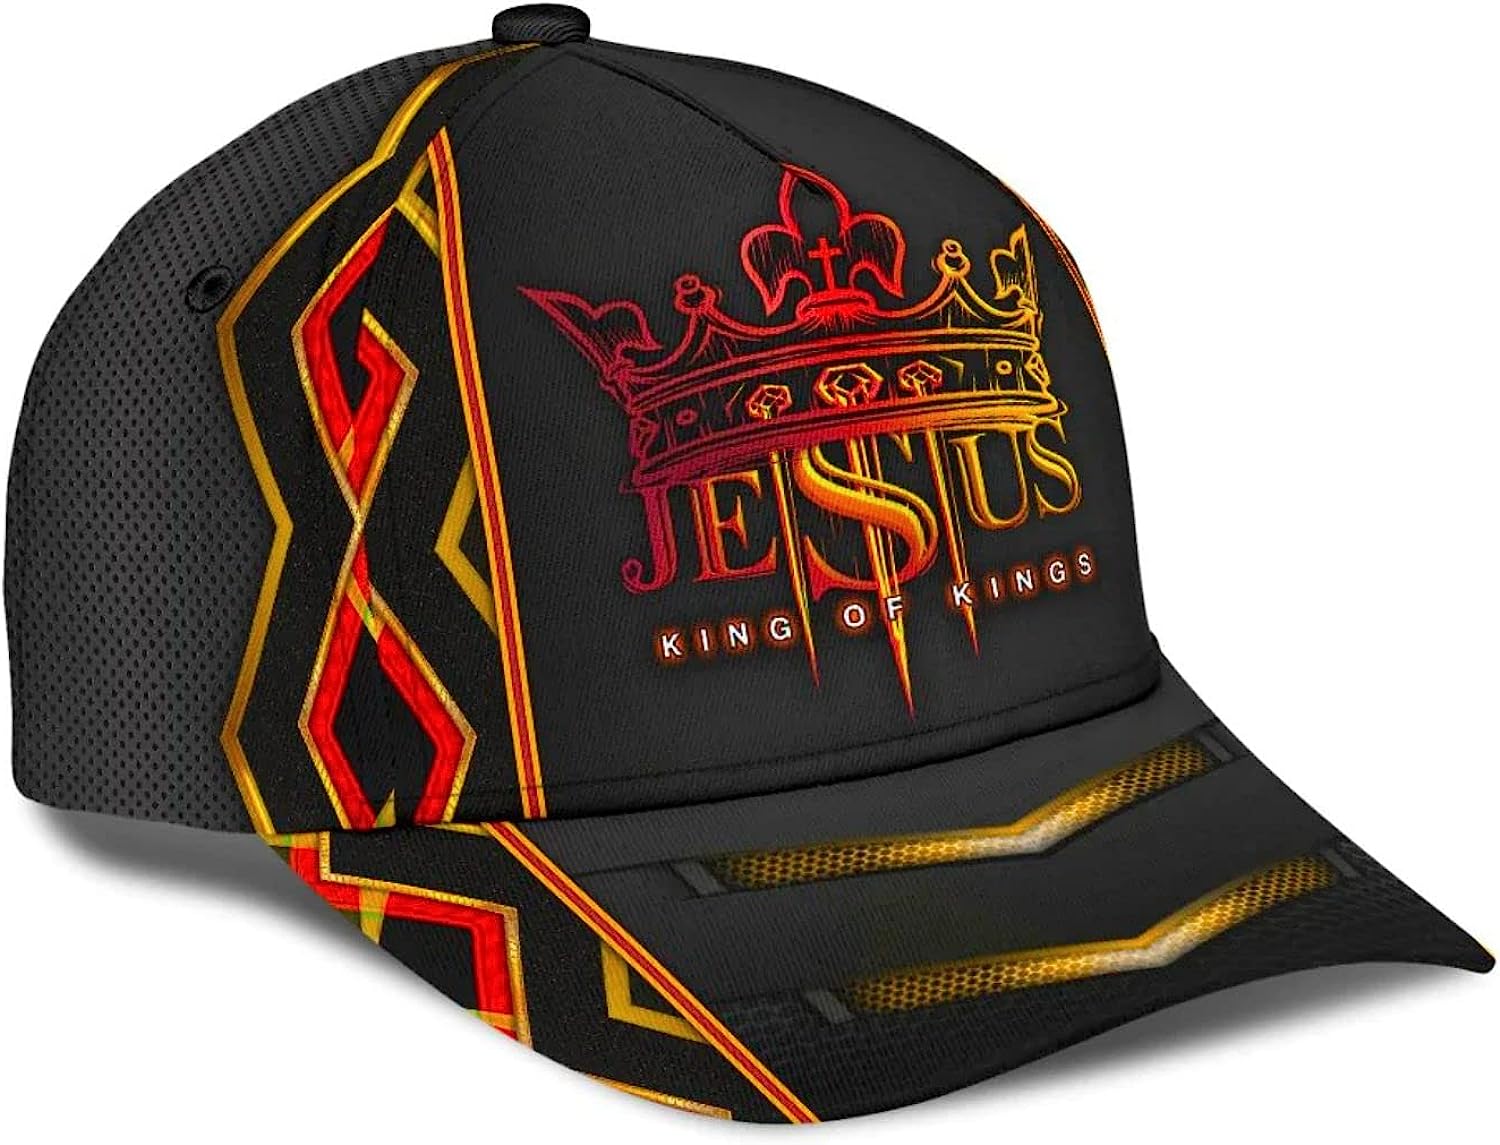 Jesus King Of Kings Baseball Cap - Christian Hats for Men and Women